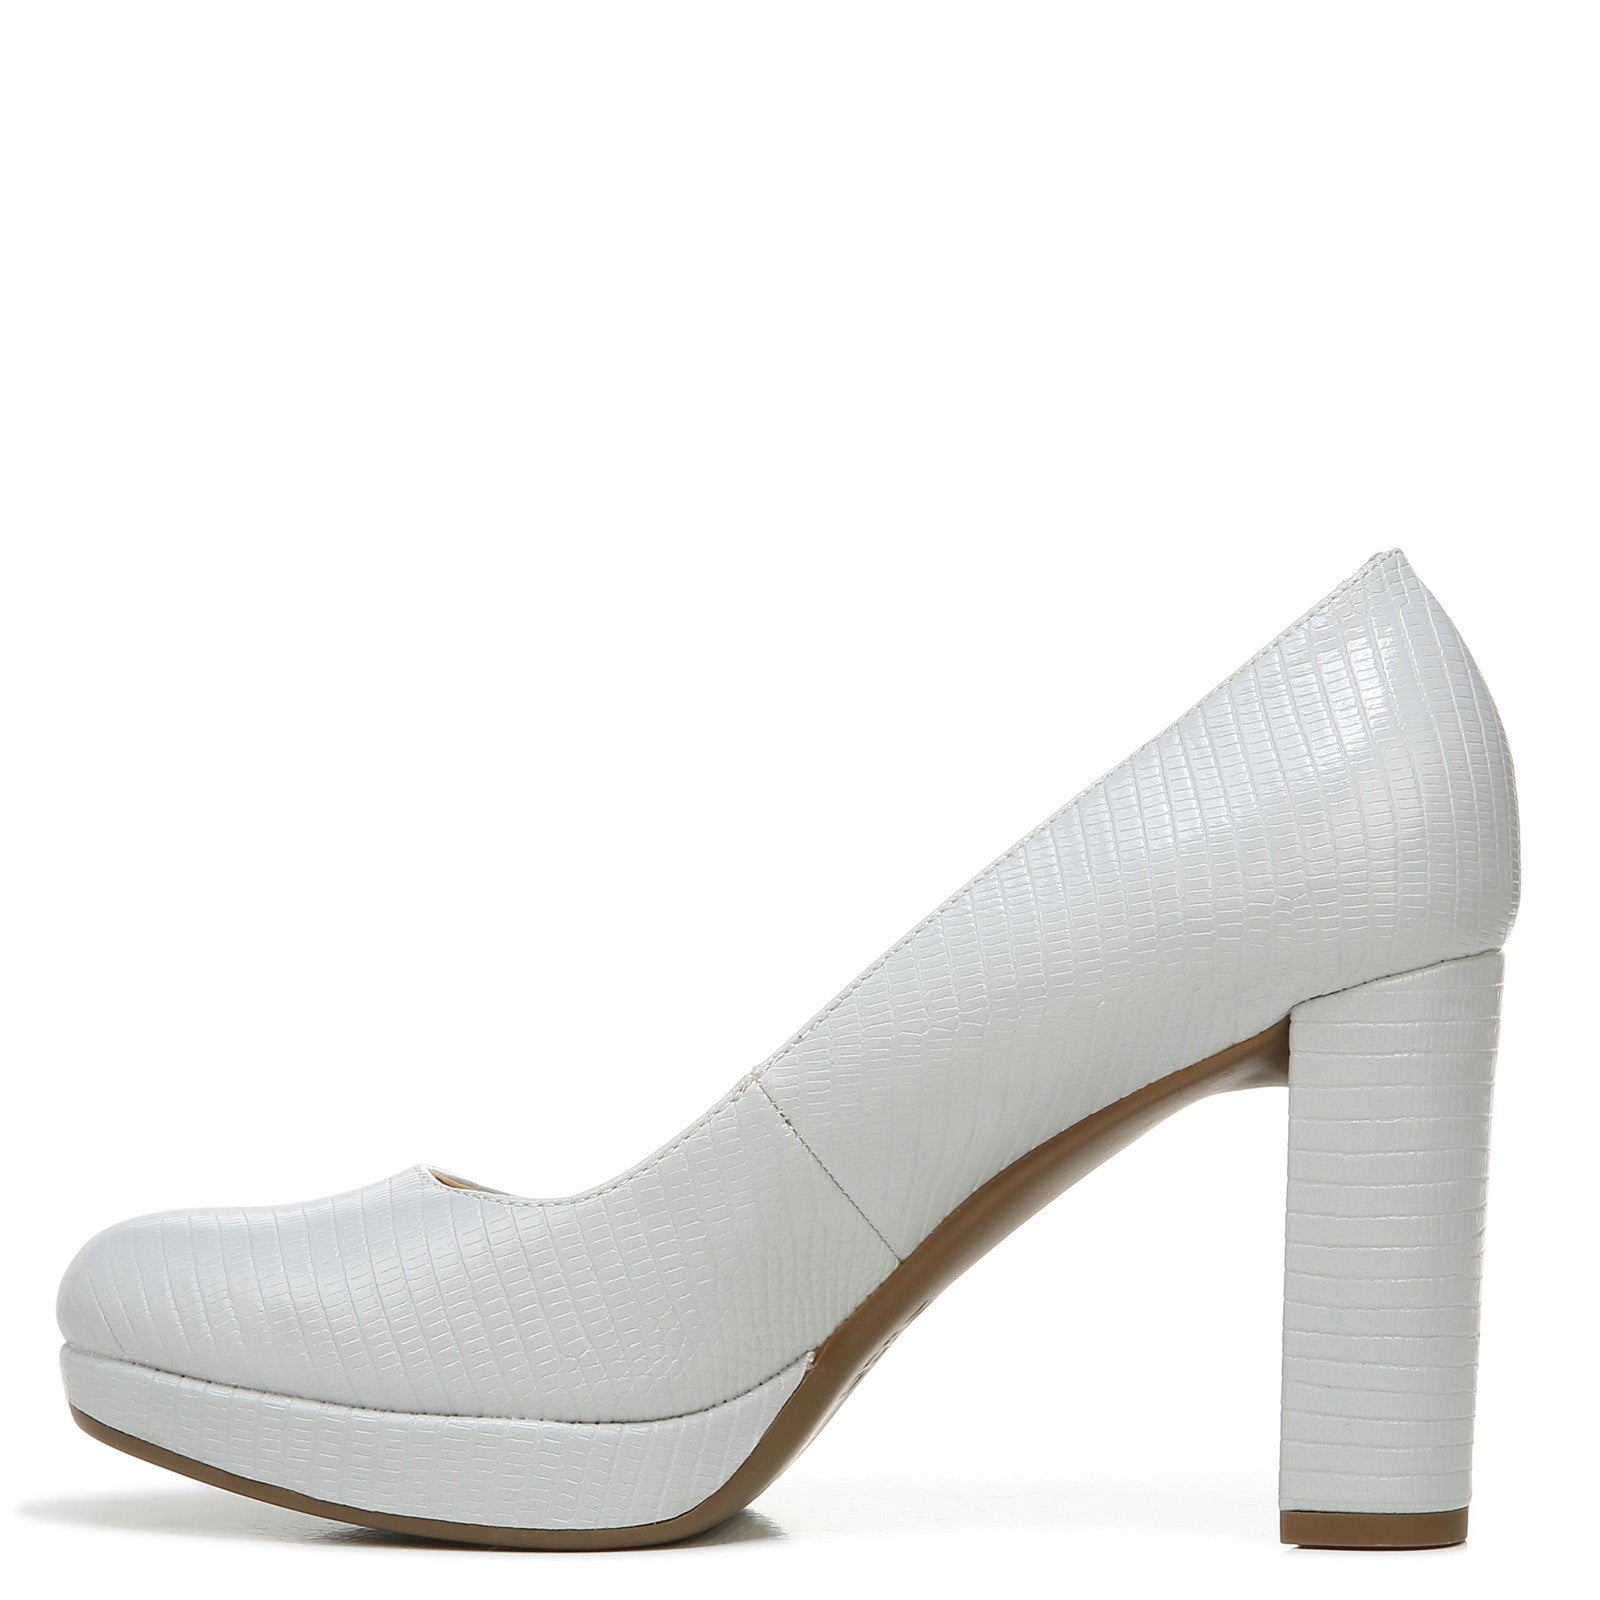 Mochi Women's Silver Fashion Sandals-6 UK (39 EU) (40-2188) : Amazon.in:  Fashion